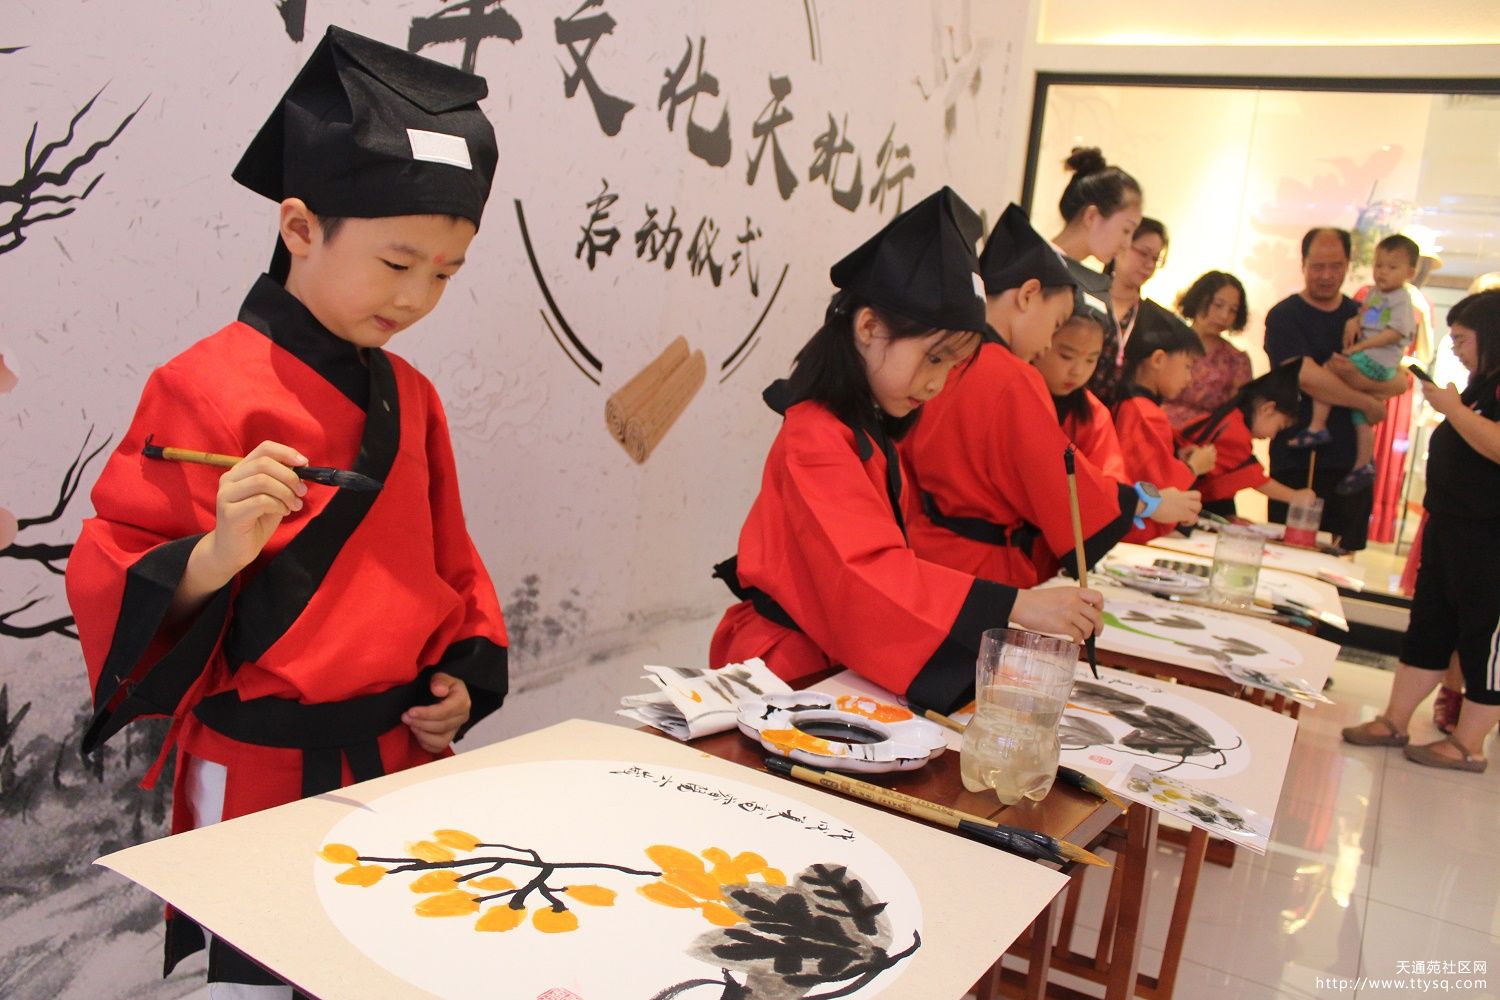 “中华文化天北行”系列文化活动启动了